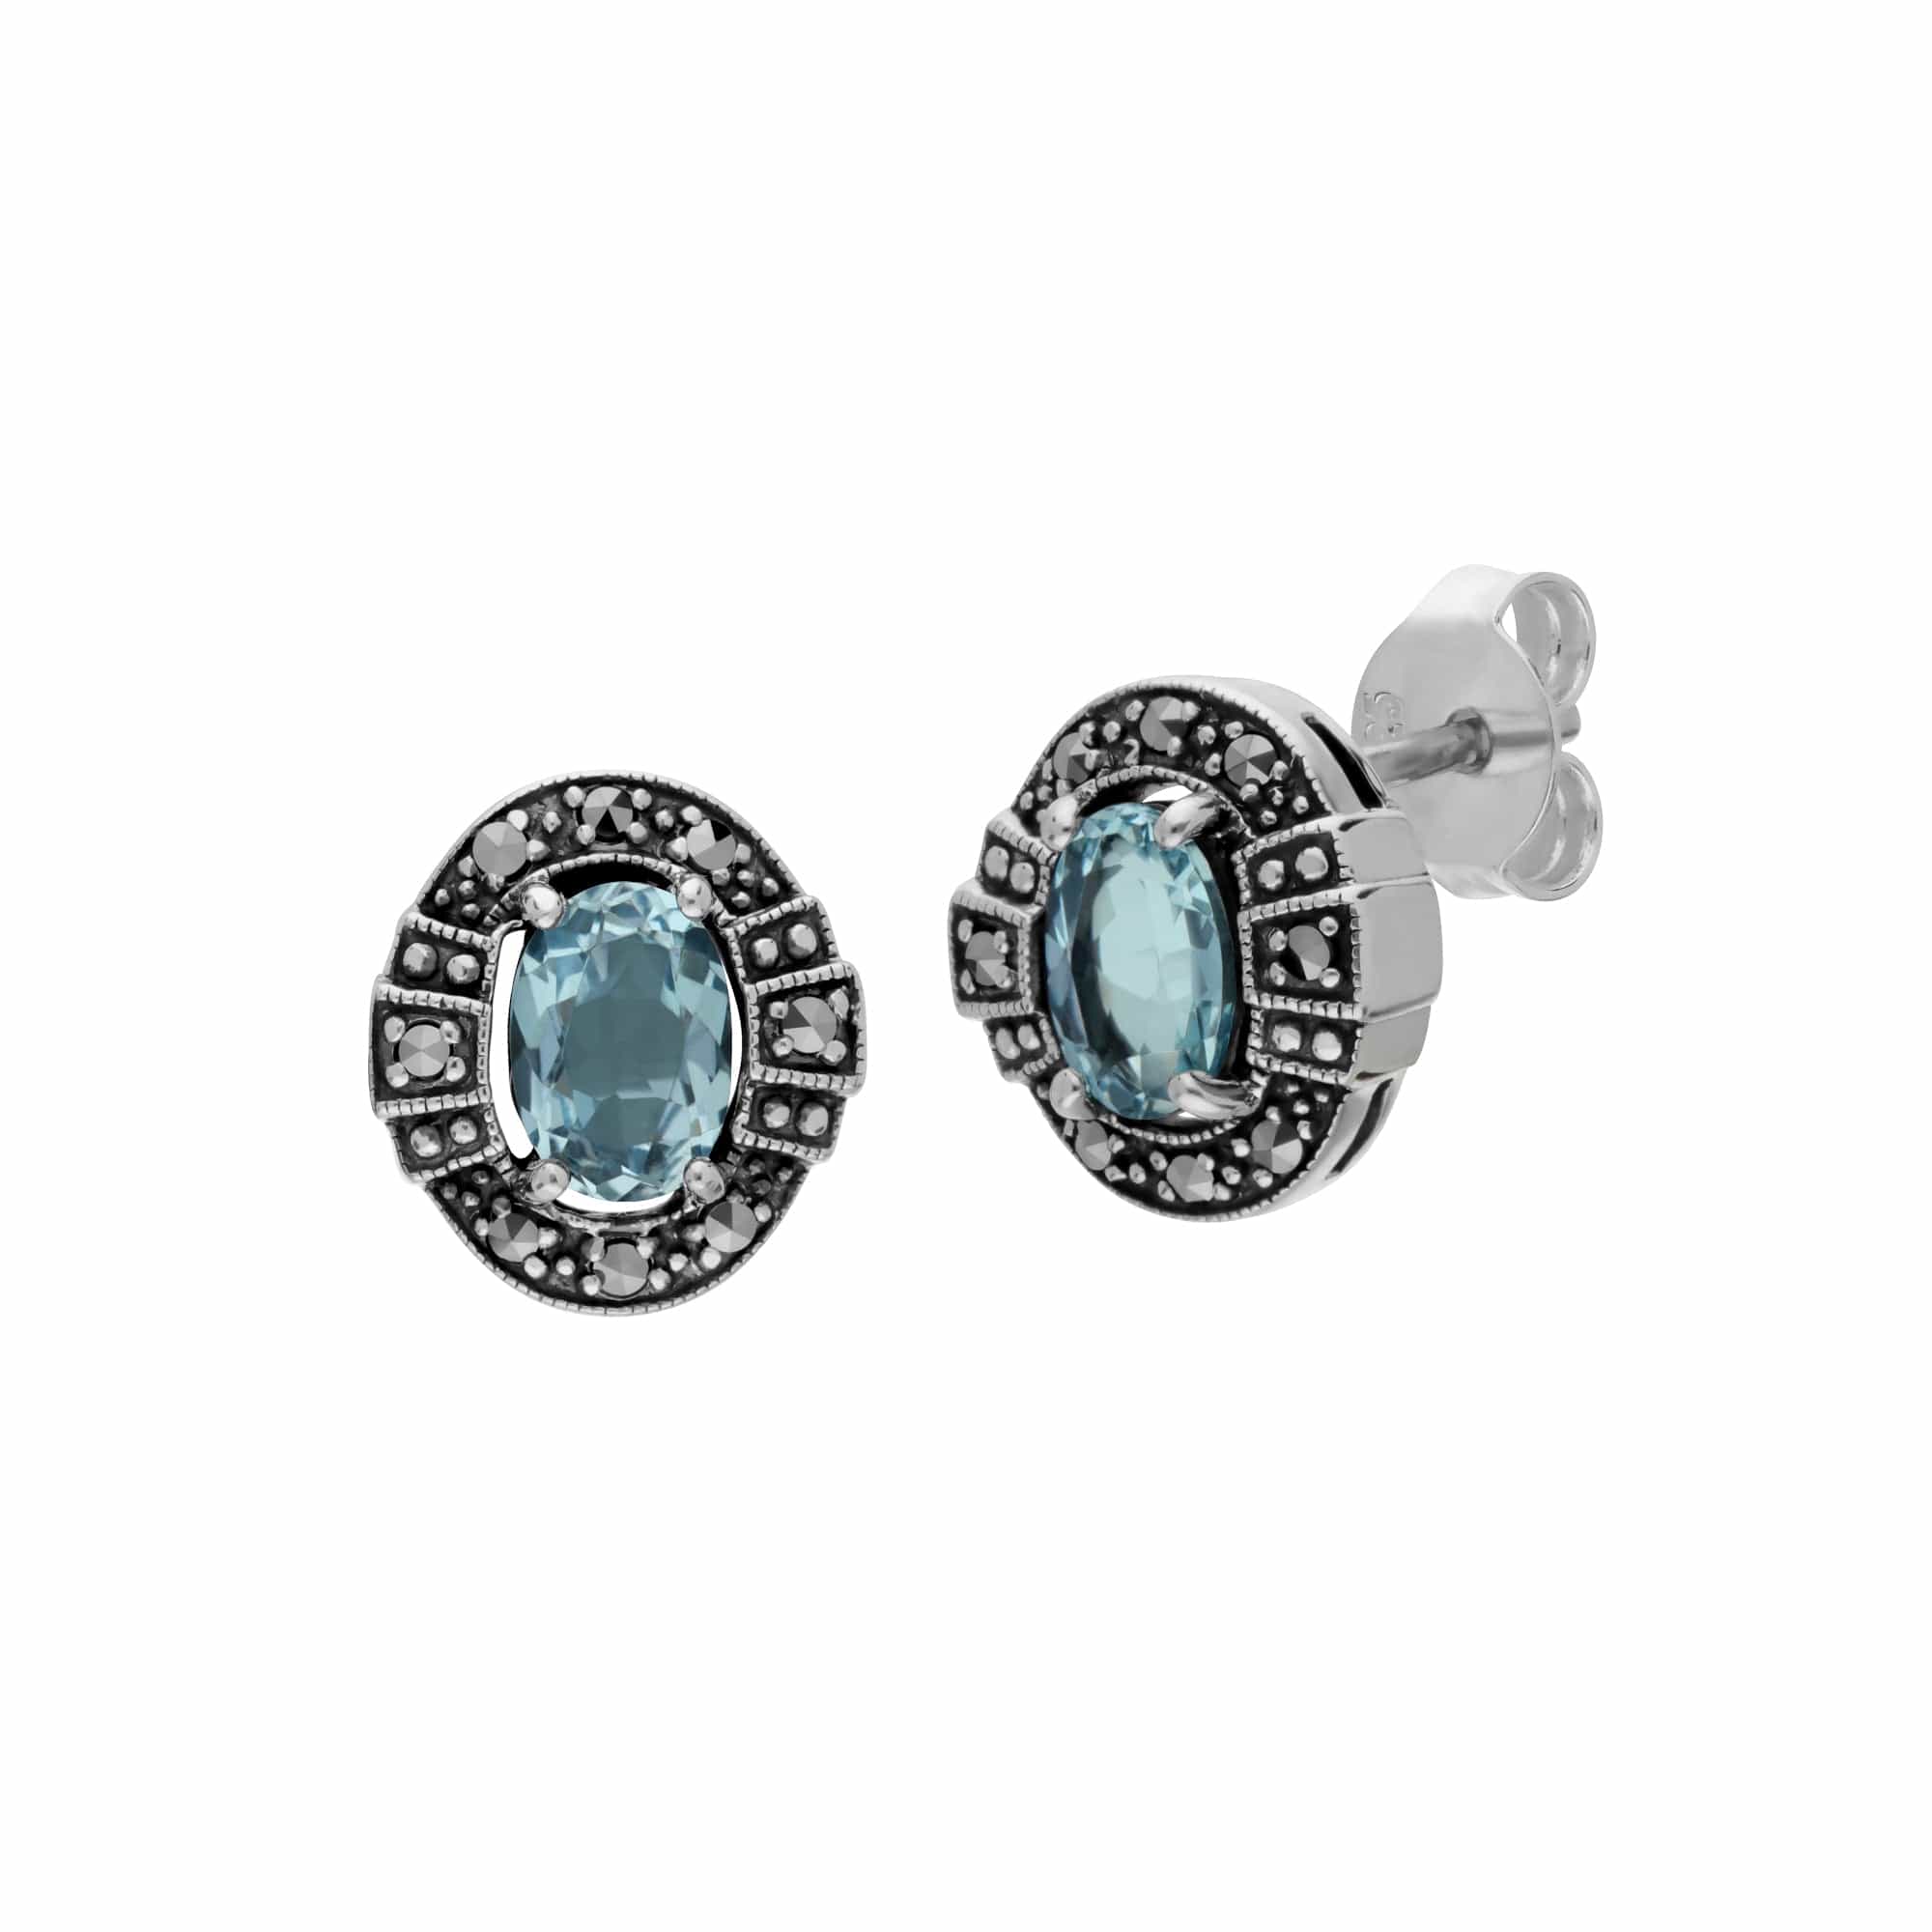 Art Deco Style Oval Blue Topaz & Marcasite Stud Earrings in 925 Sterling Silver - Gemondo